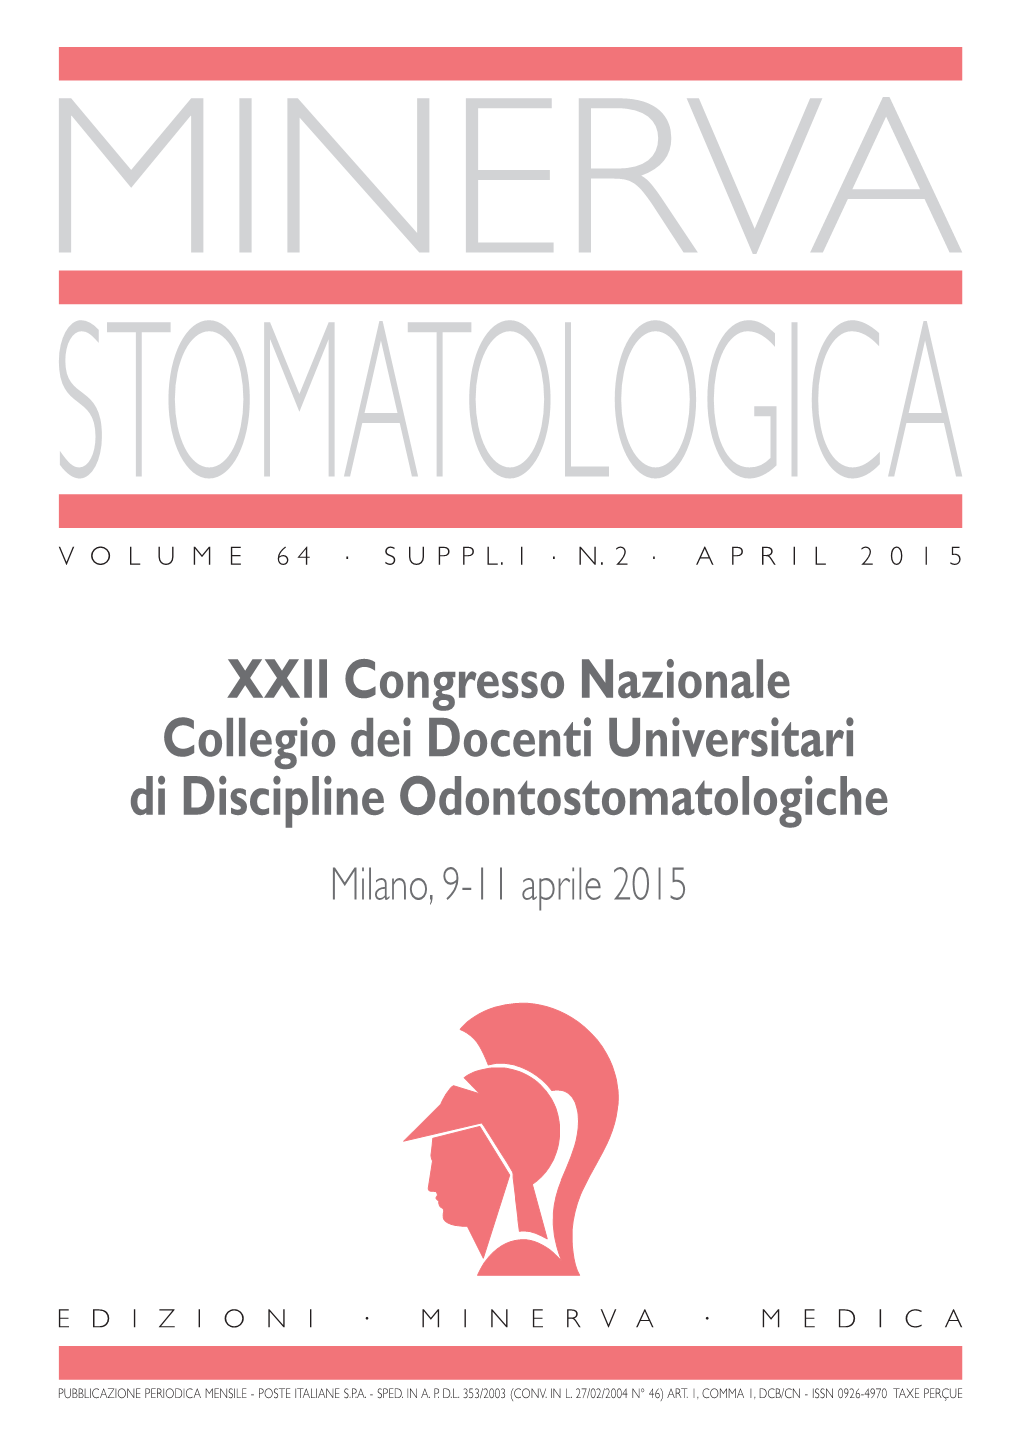 XXII Congresso Nazionale Collegio Dei Docenti Universitari Di Discipline Odontostomatologiche Milano, 9-11 Aprile 2015 MINERVA STOMATOLOGICA Vol